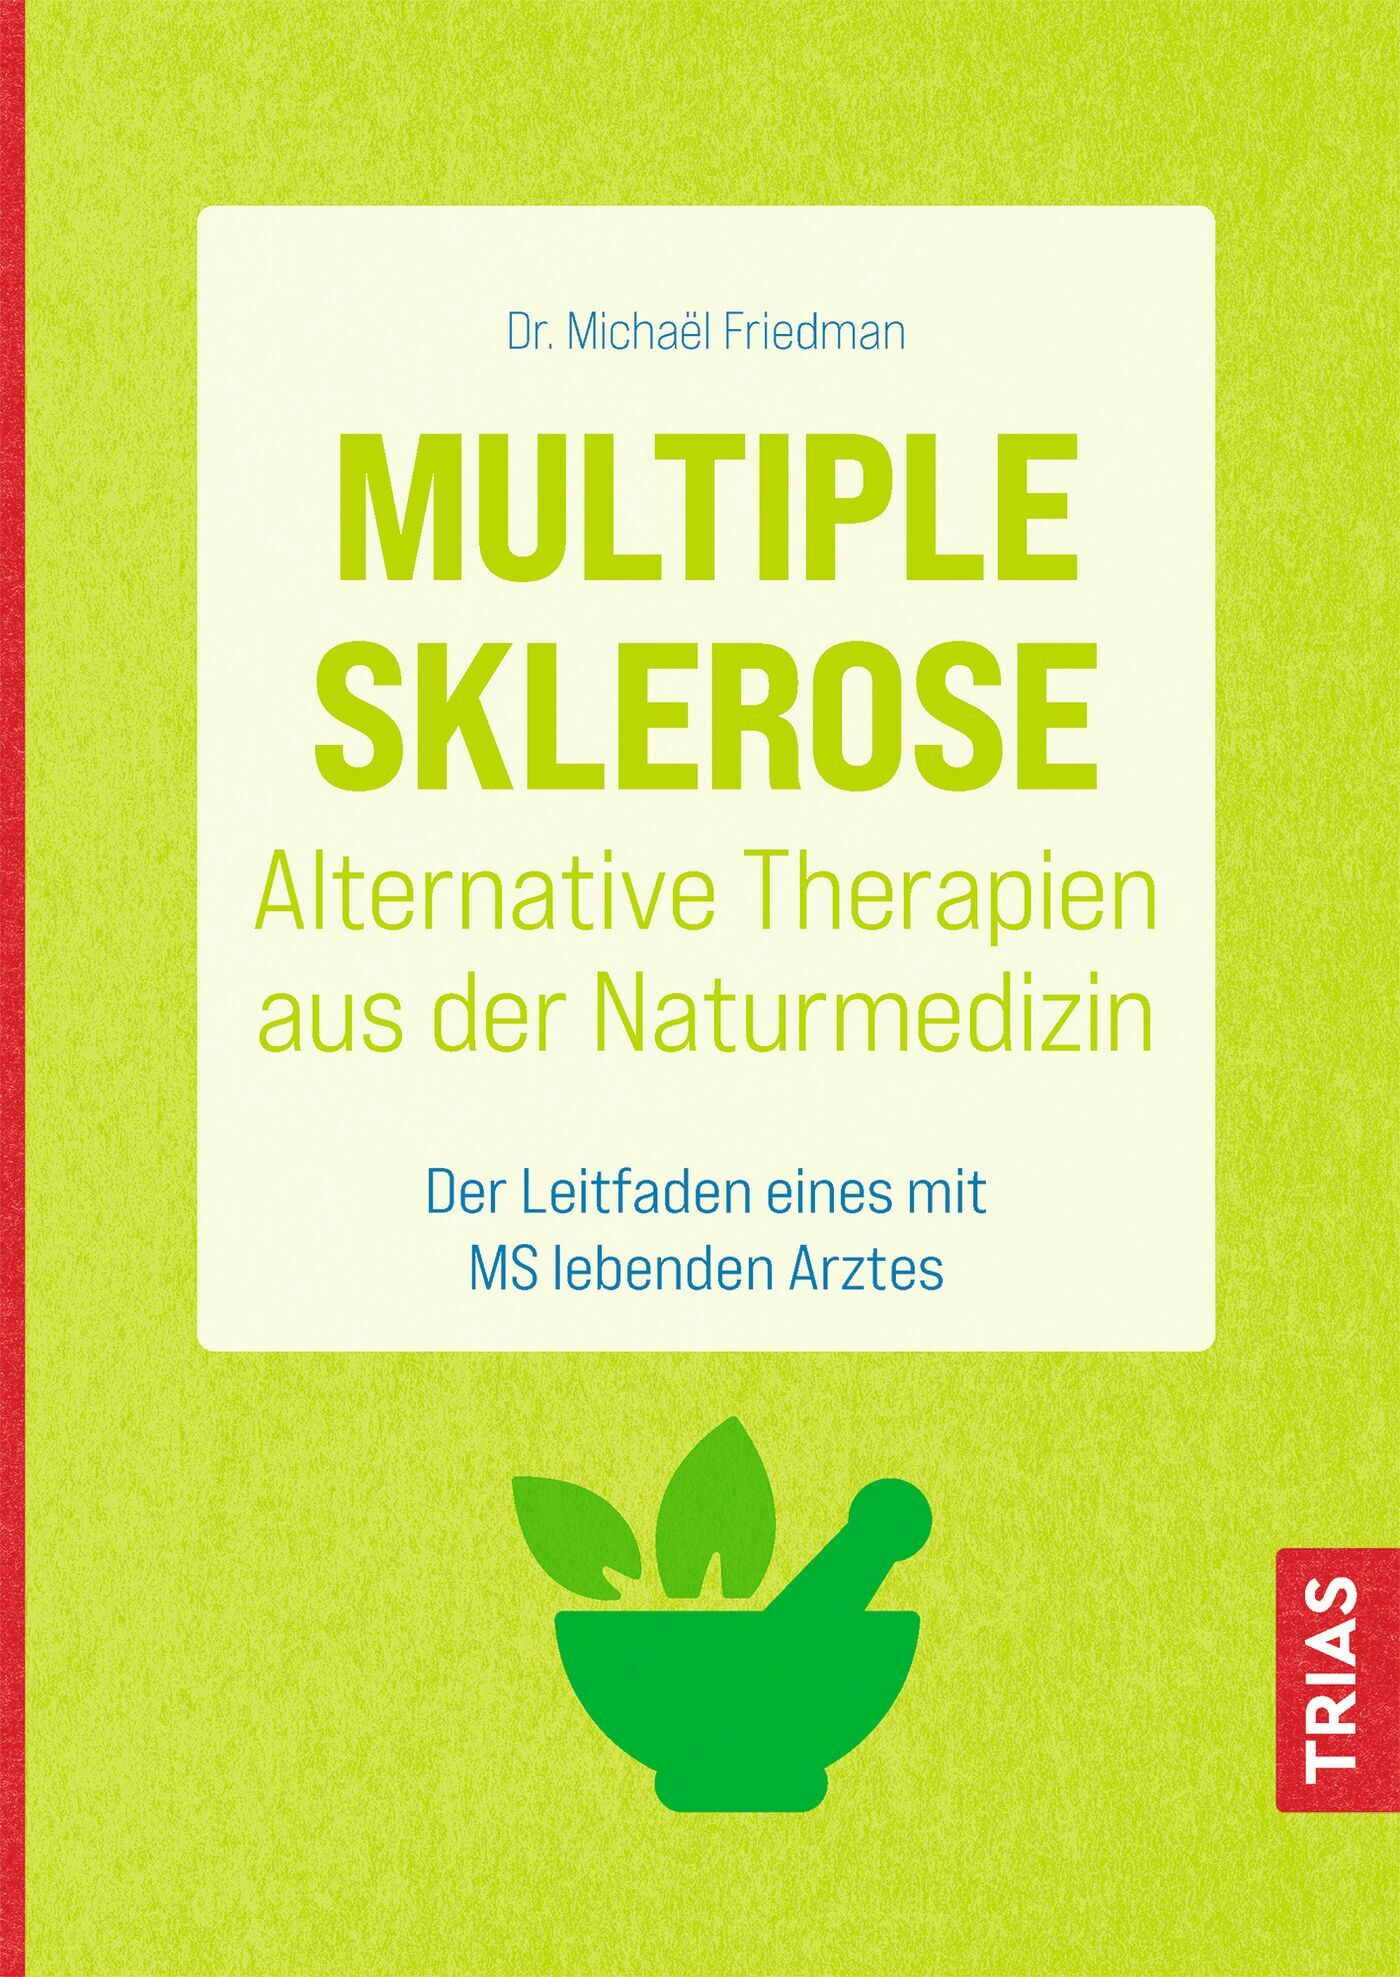 Multiple Sklerose - Alternative Therapien aus der Naturmedizin, 9783432114590